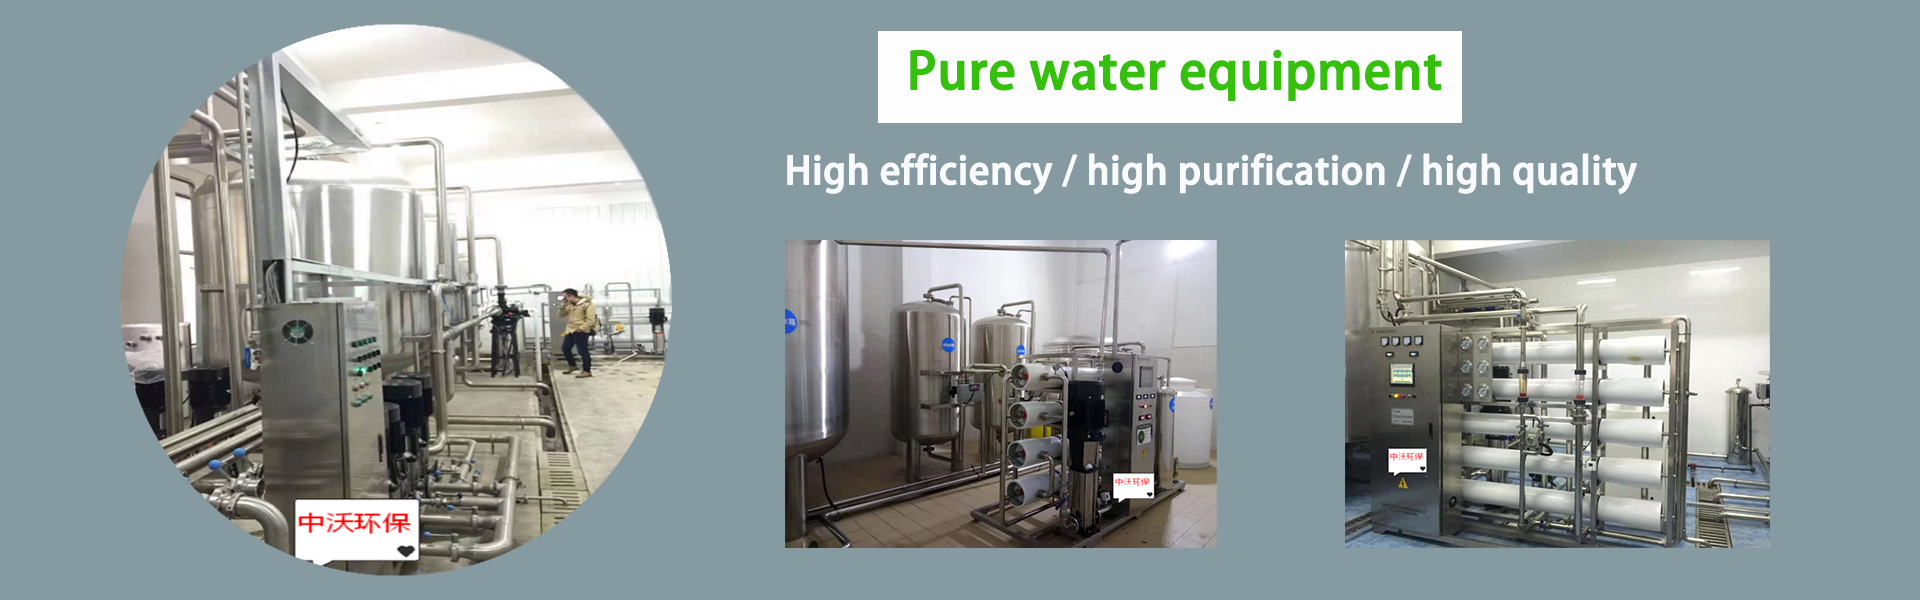 อุปกรณ์บำบัดน้ำ, อุปกรณ์ทำน้ำให้บริสุทธิ์, อุปกรณ์ป้องกันสิ่งแวดล้อม,Foshan zhongwo Environmental Protection Technology Co Ltd.